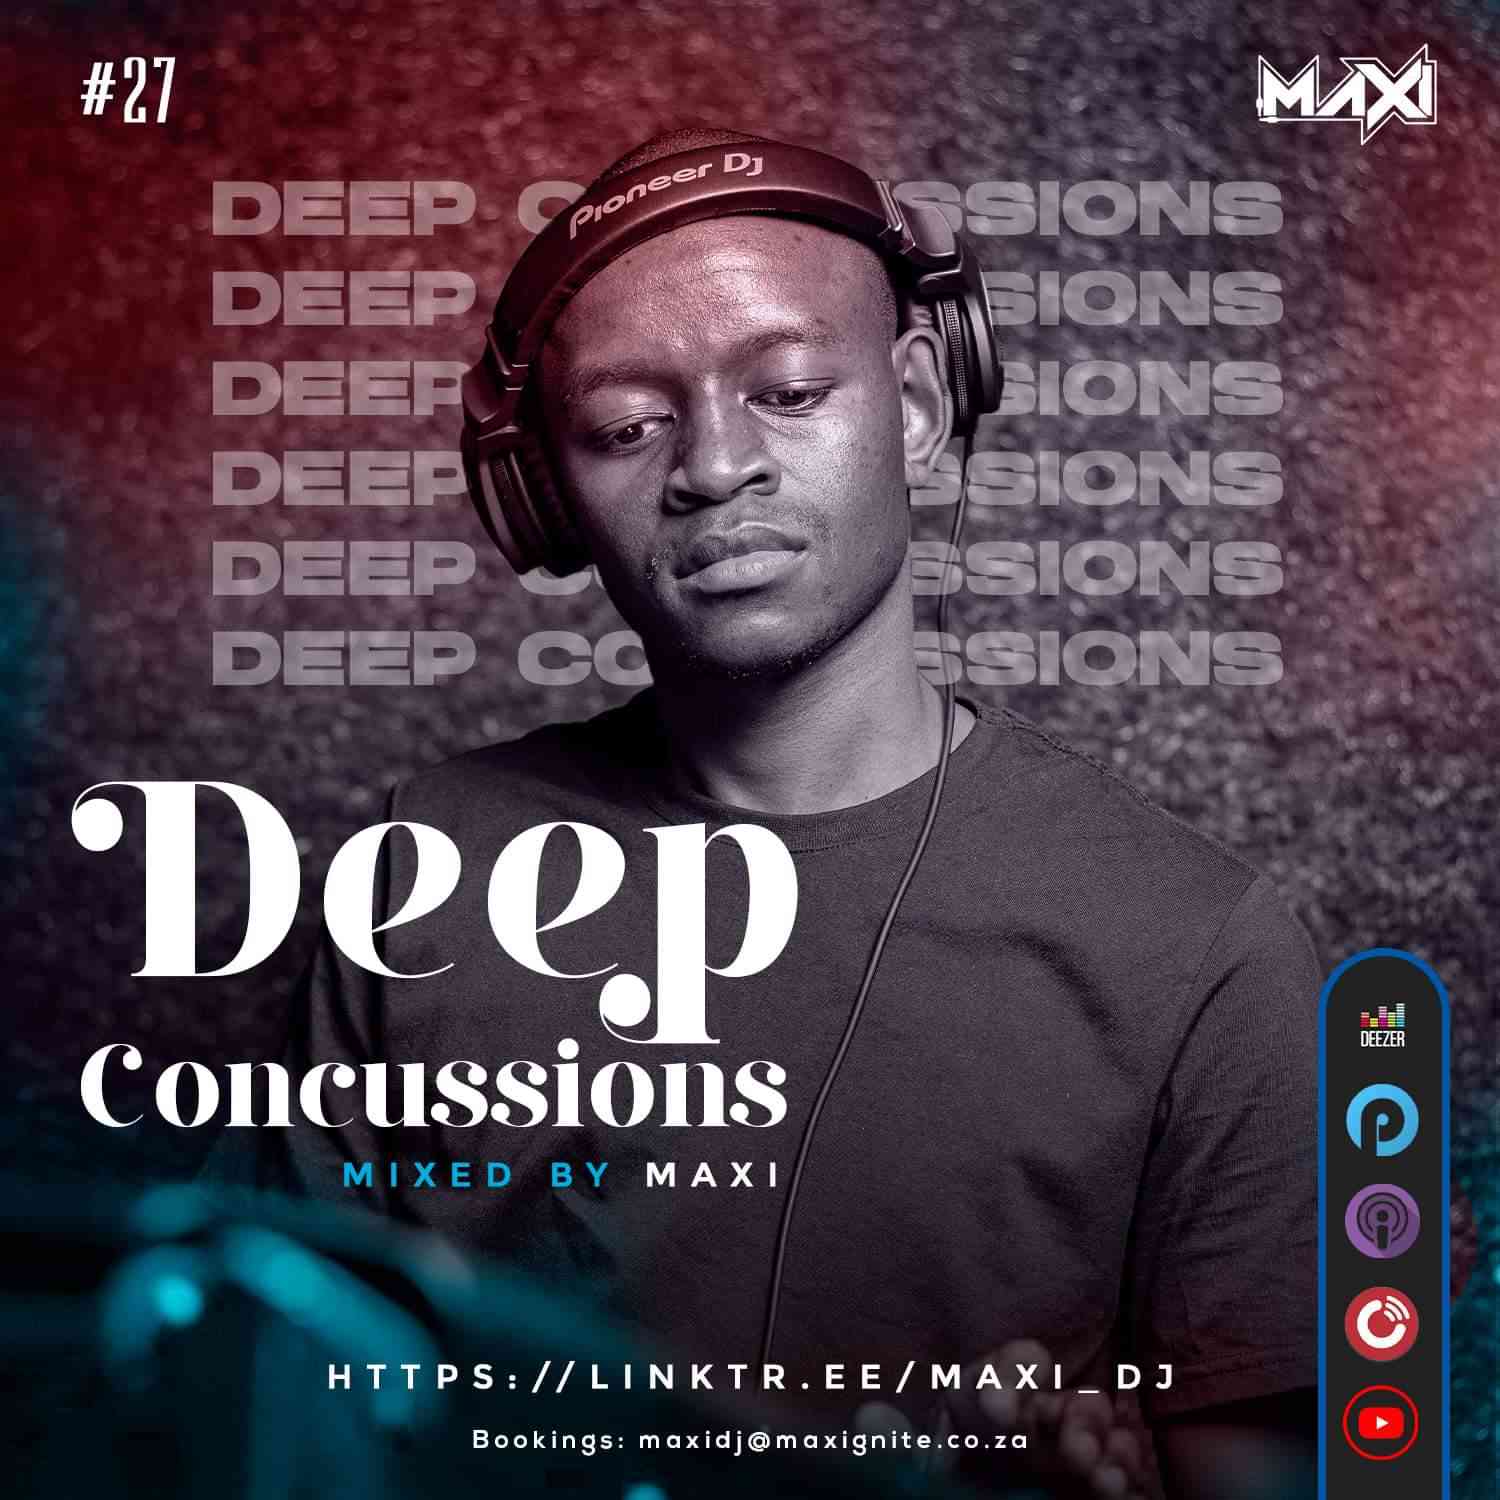 Dj Maxi - Deep Concussions 027 Mix